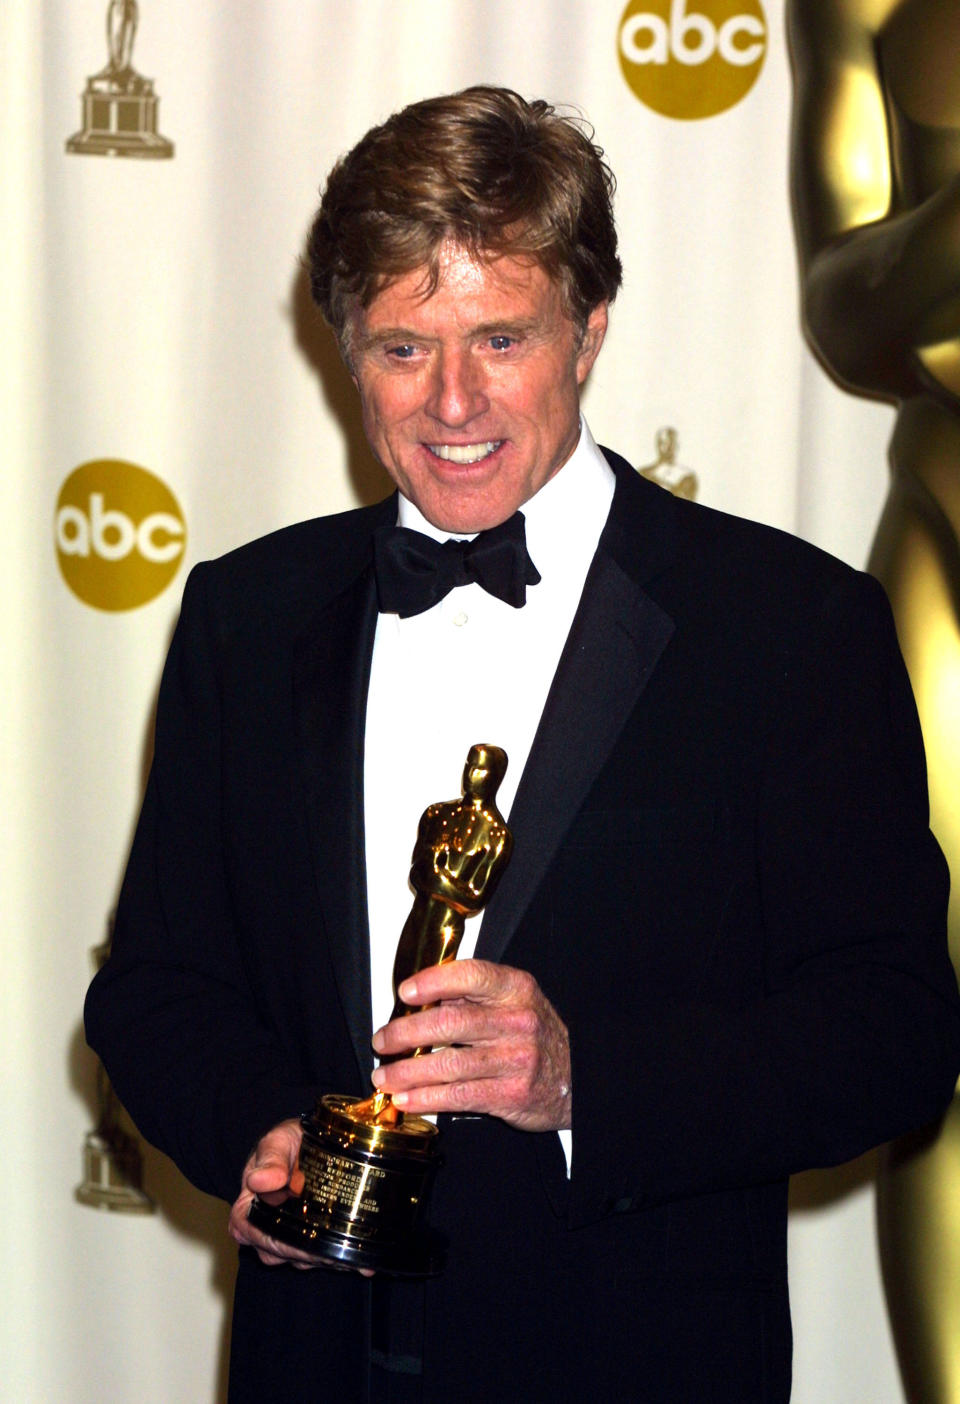 2002 erhielt Robert Redford im Alter von 65 Jahren den Ehrenoscar für sein Lebenswerk als Schauspieler, Regisseur und Produzent sowie als Gründer des Sundance Instituts. (Bild-Copyright: Jeffrey Mayer/WireImage)